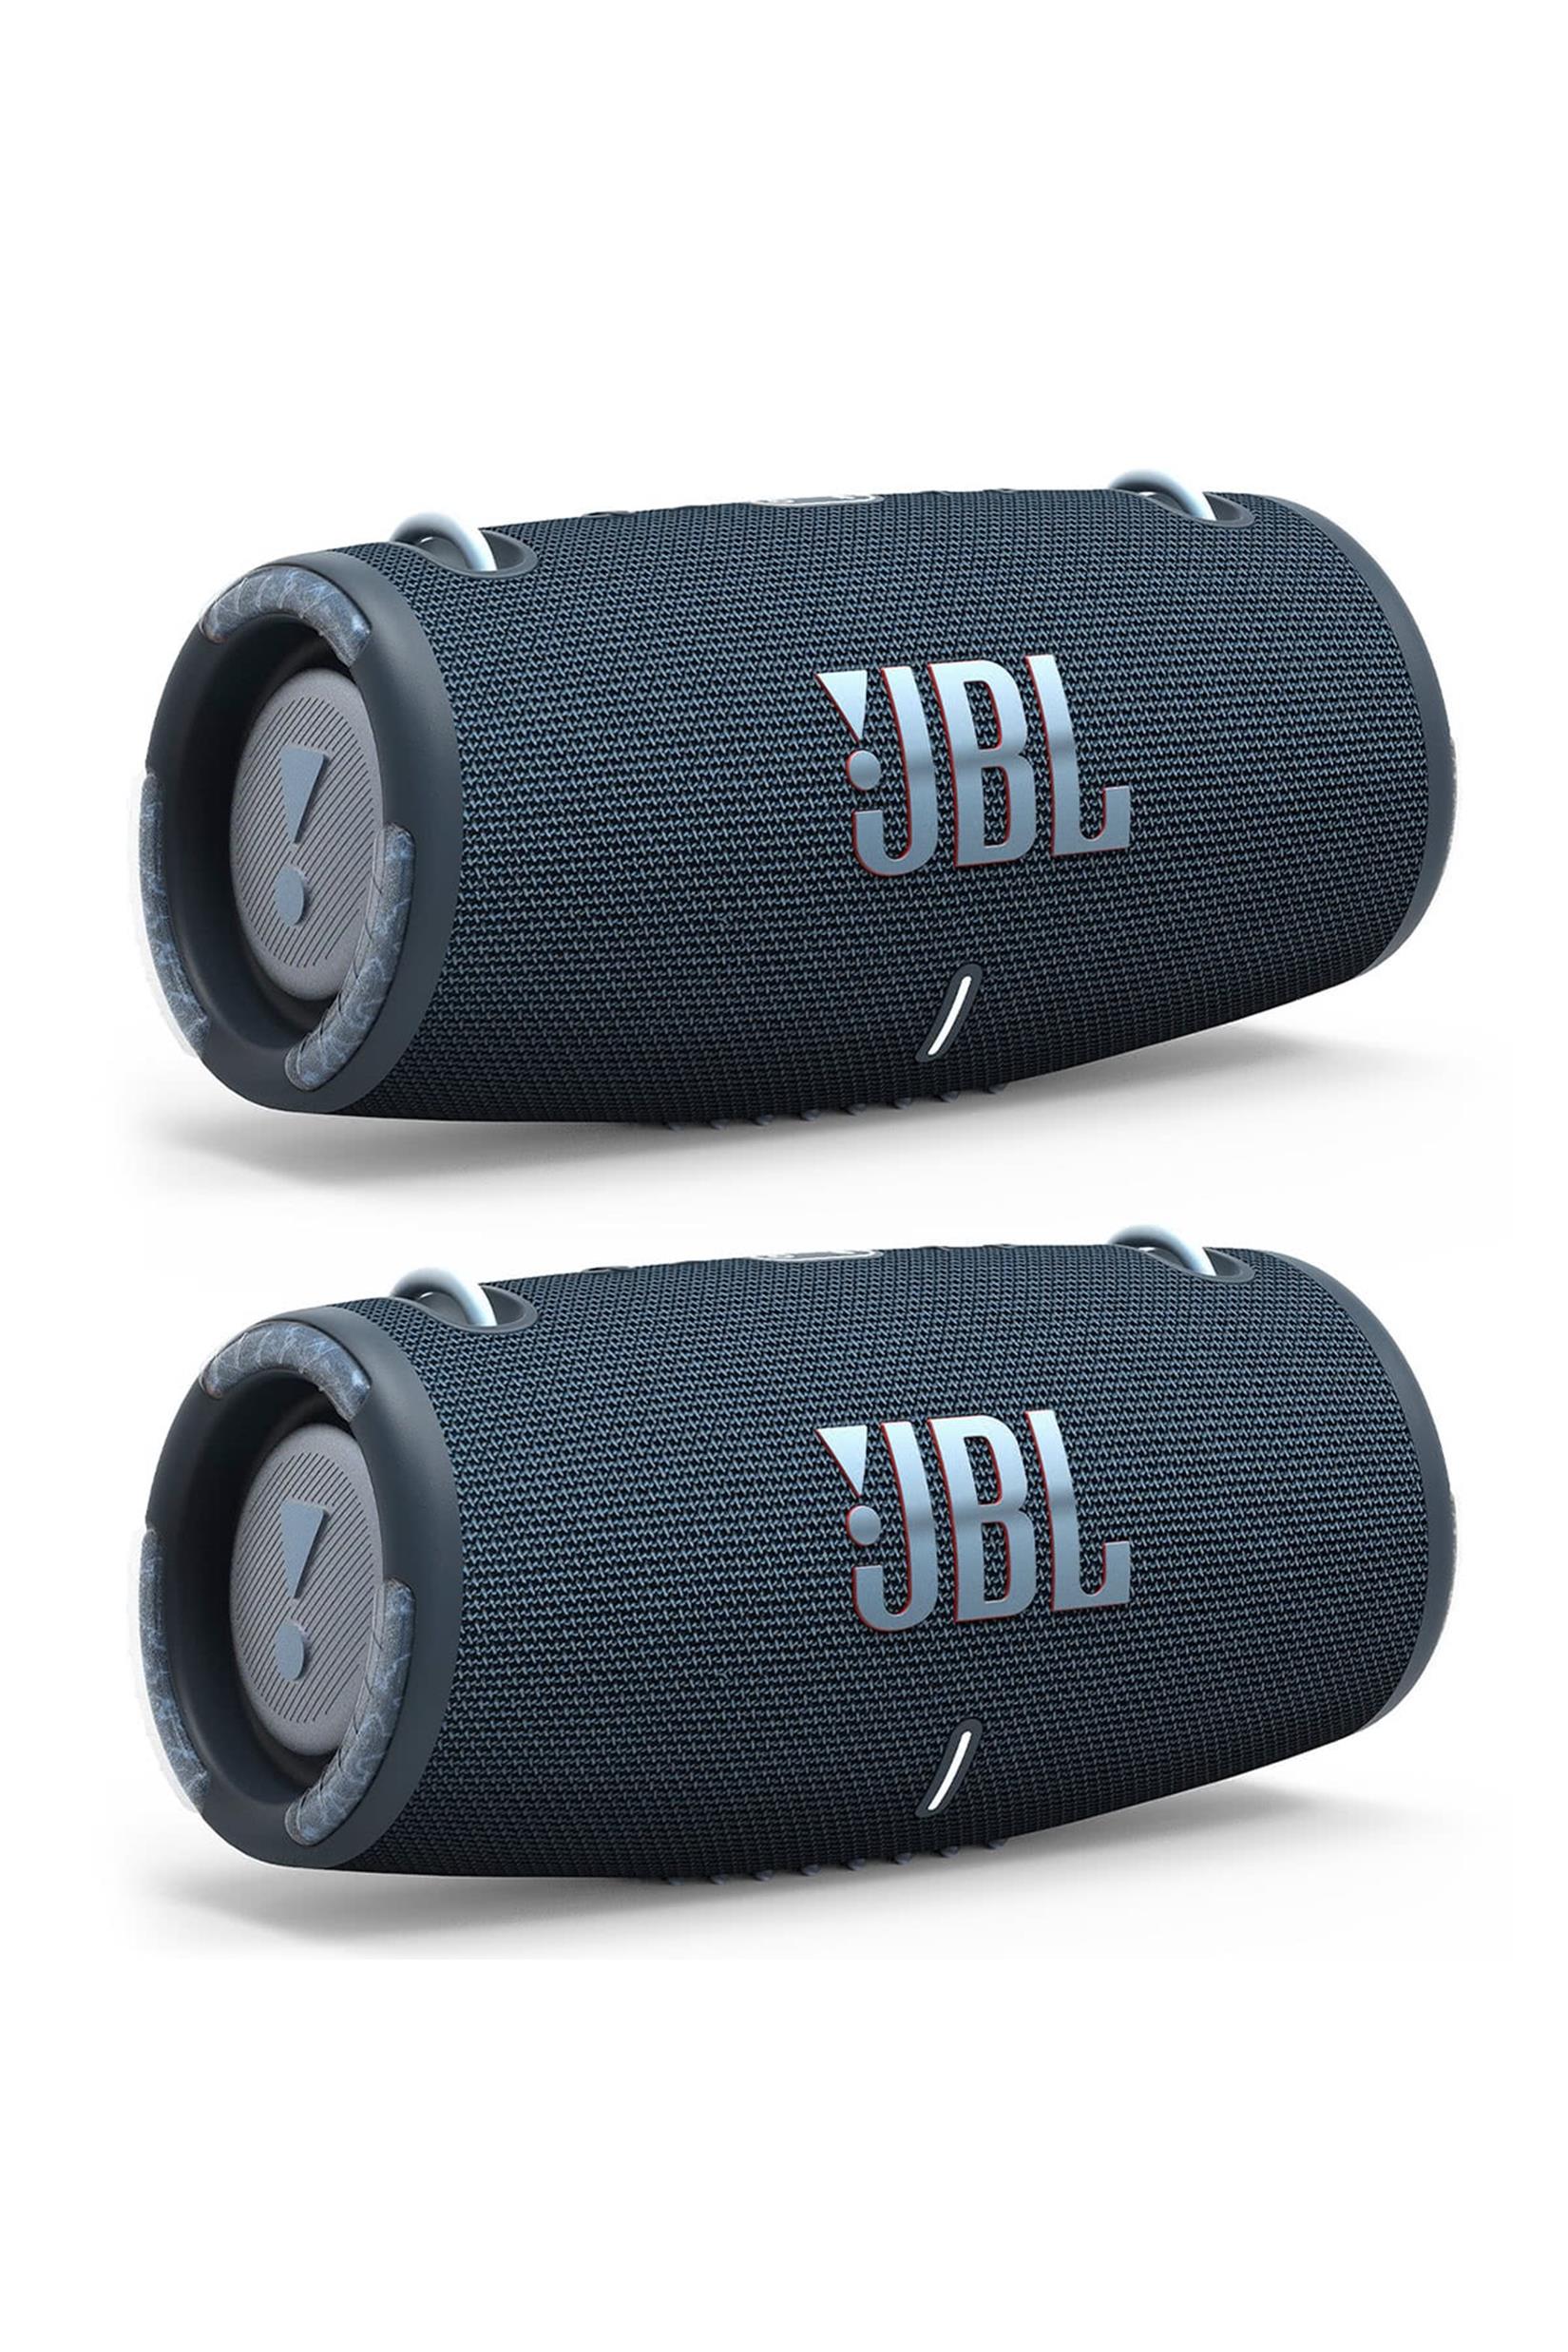 JBL Xtreme Portable Bluetooth Waterproof Speakers Pair (Blue) 